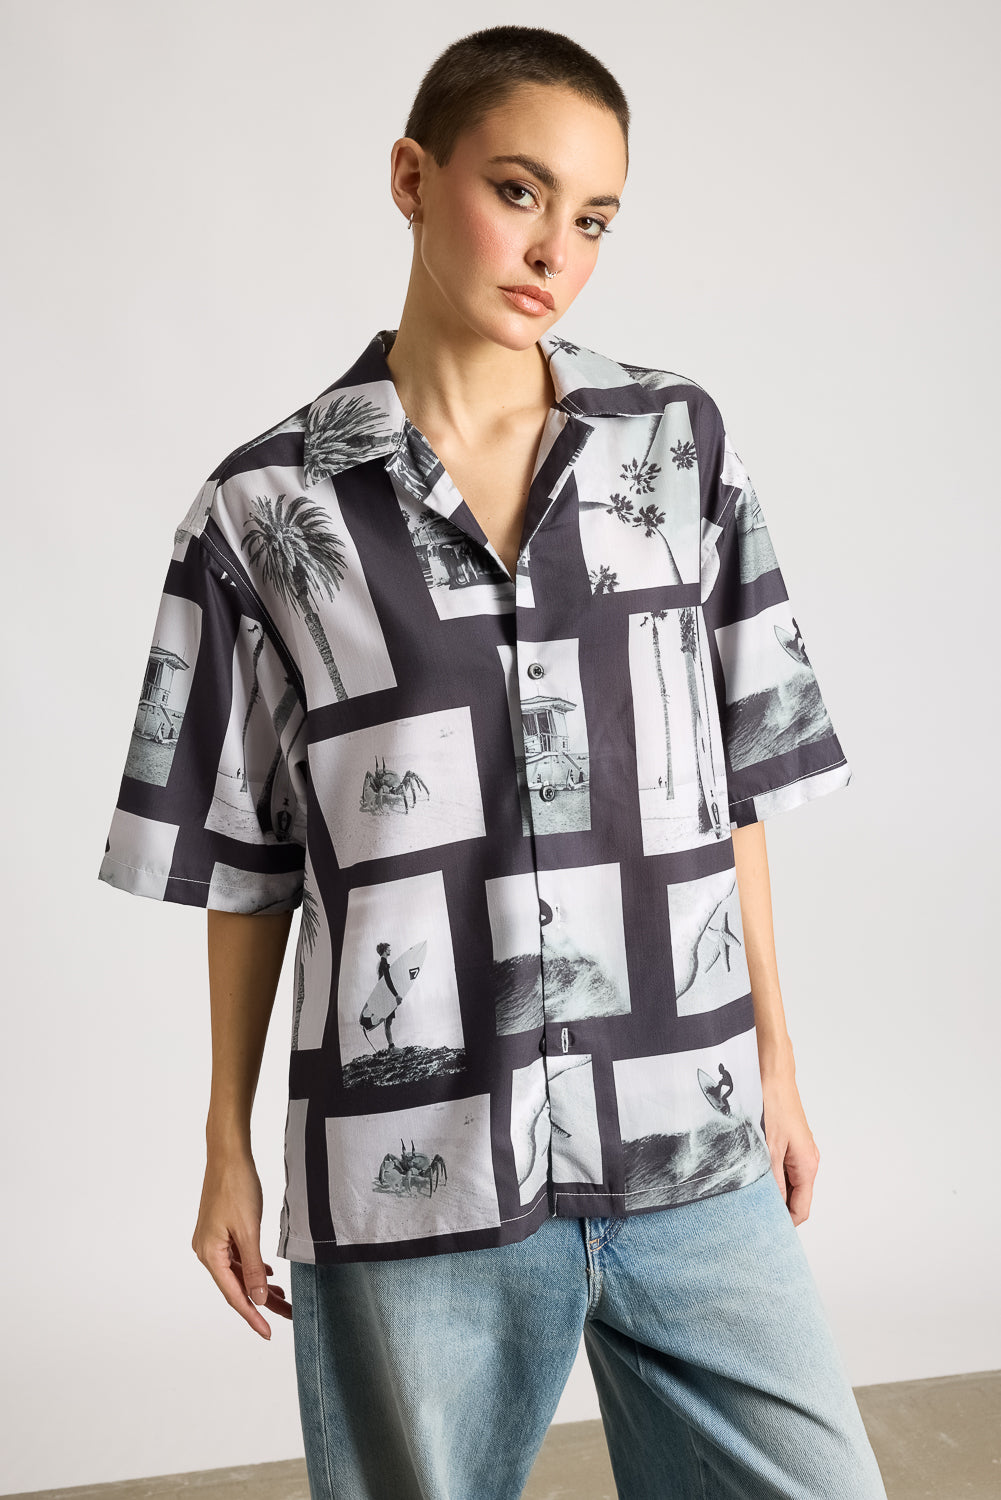 Monochrome Tidal Women's Shirt